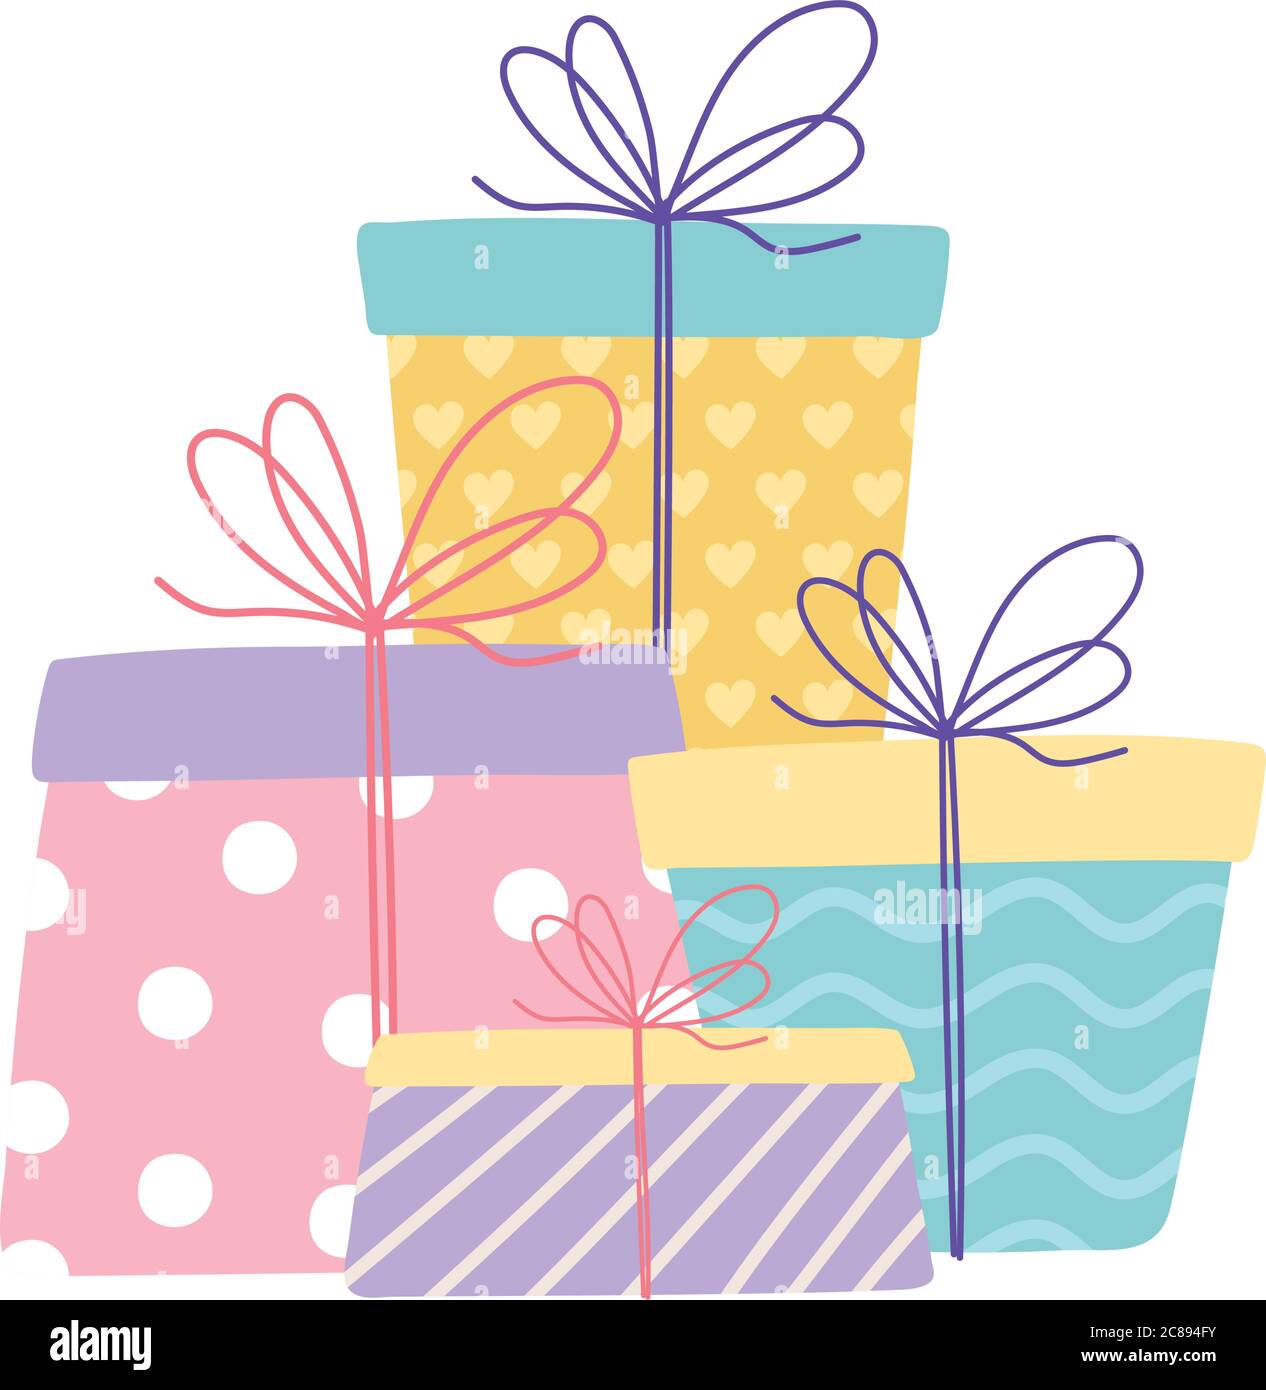 Cajas de regalo de cumpleaños en estilo de dibujos animados planos